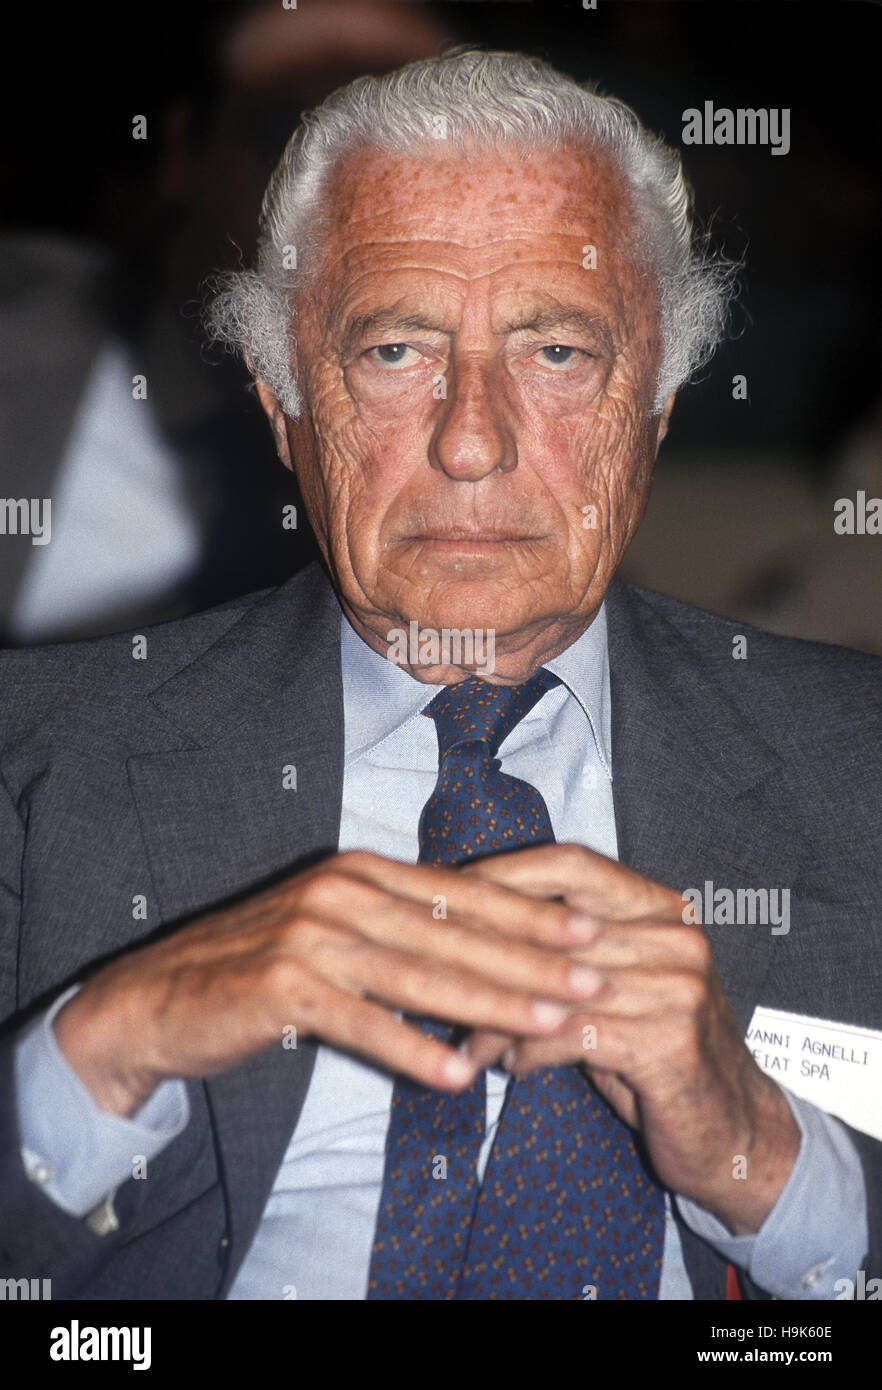 Giovanni Agnelli, sagte "Gianni" und auch der Anwalt (Turin, 12. März 1921 - Turin, 24. Januar 2003), war ein italienischer Unternehmer und Politiker, Hauptaktionär und Direktor von FIAT auf dem Gipfel sowie Senator auf Lebenszeit. Stockfoto